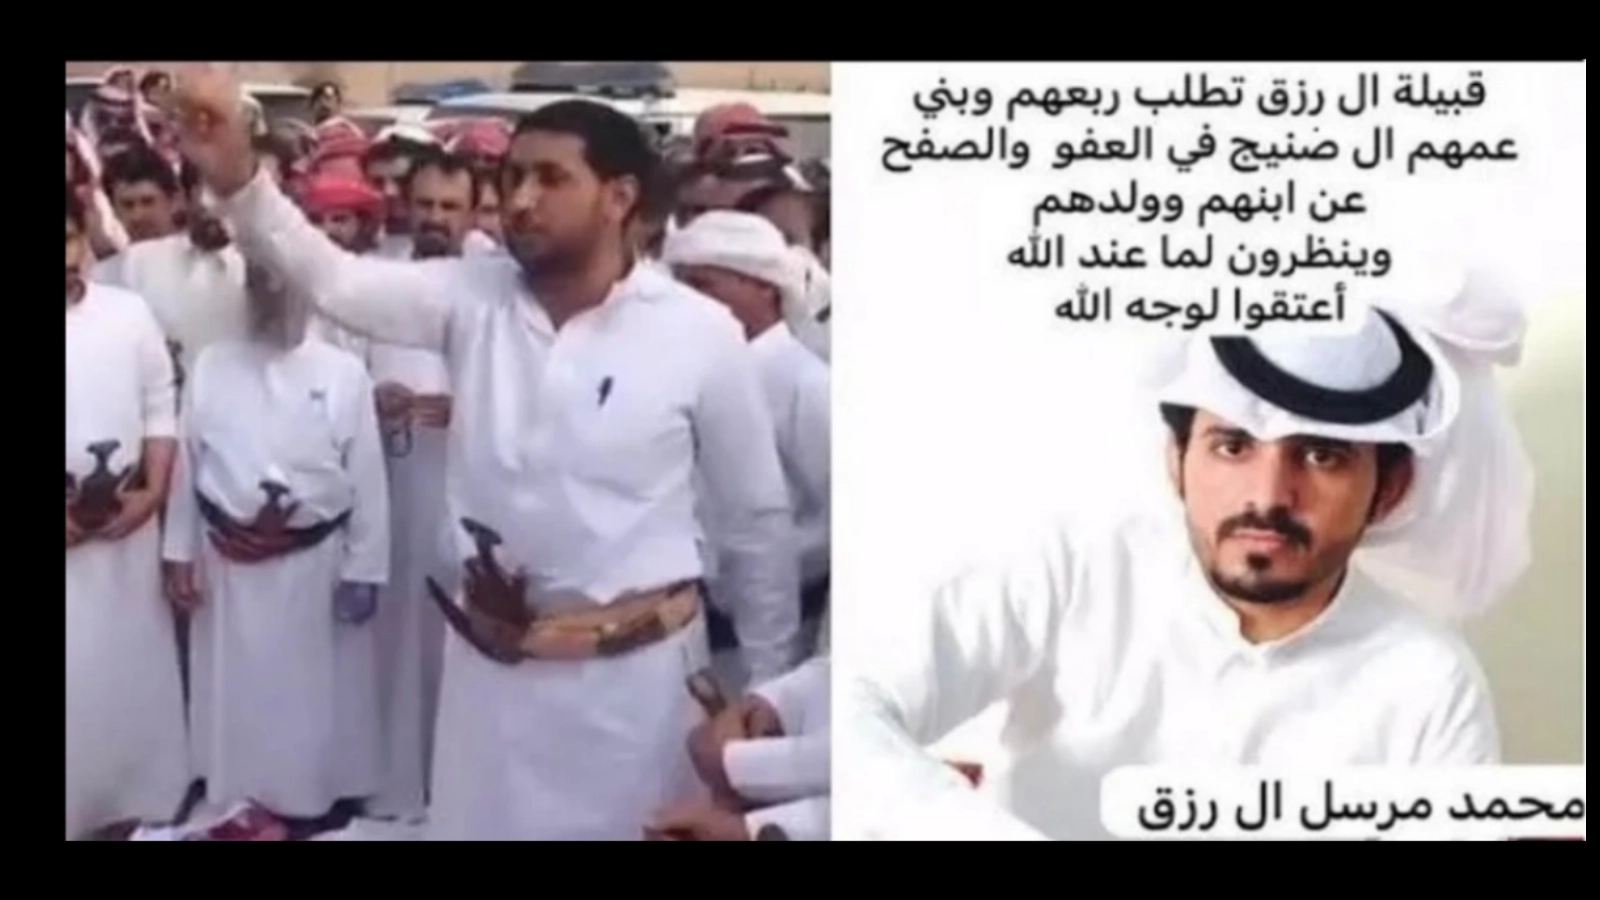 سبب اعدام محمد مرسل ال رزق بالسعودية